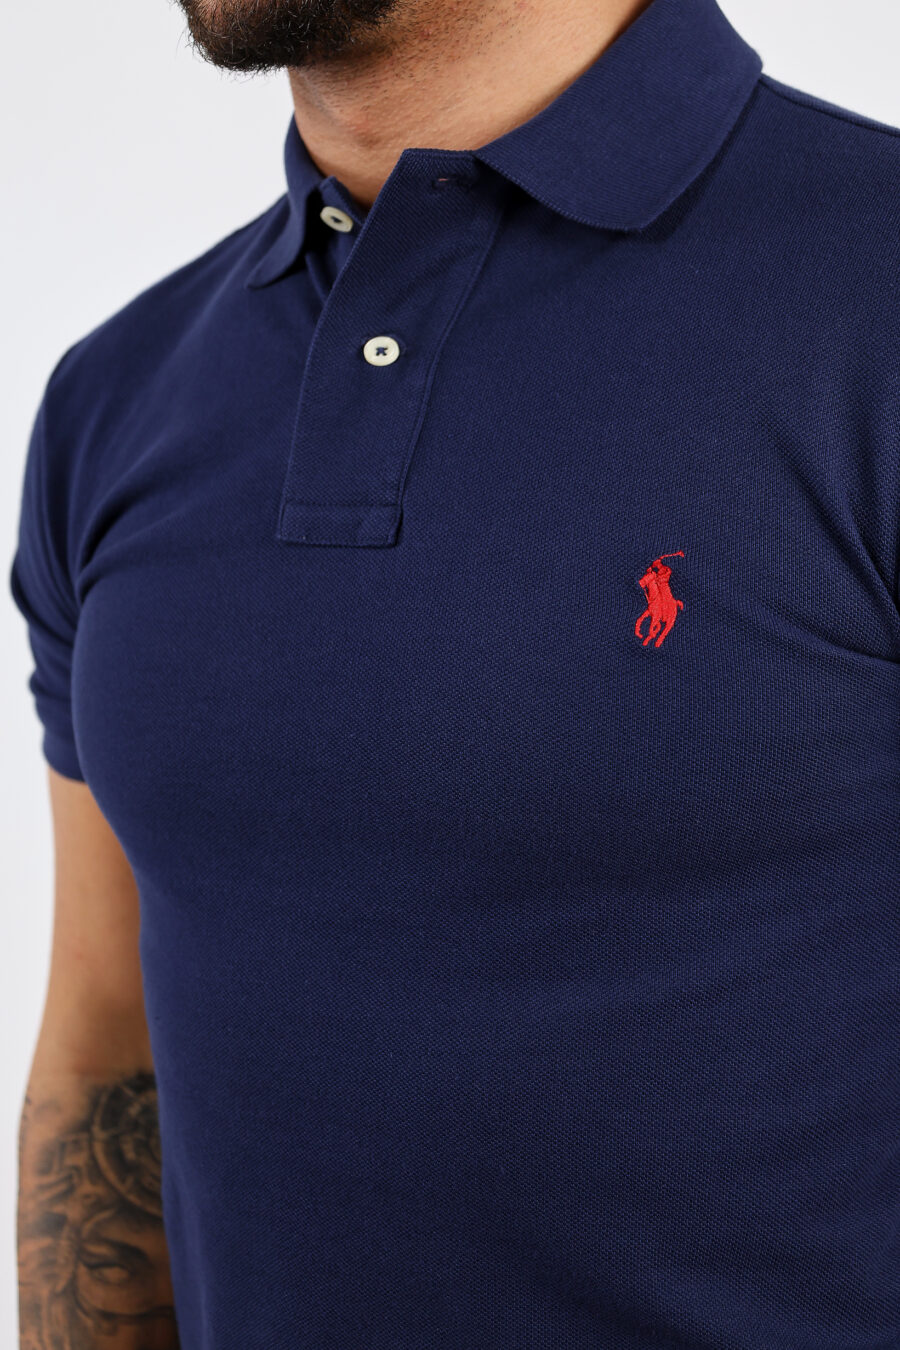 Dunkelblaues Poloshirt mit Mini-Logo "Polo" - BLS Fashion 307